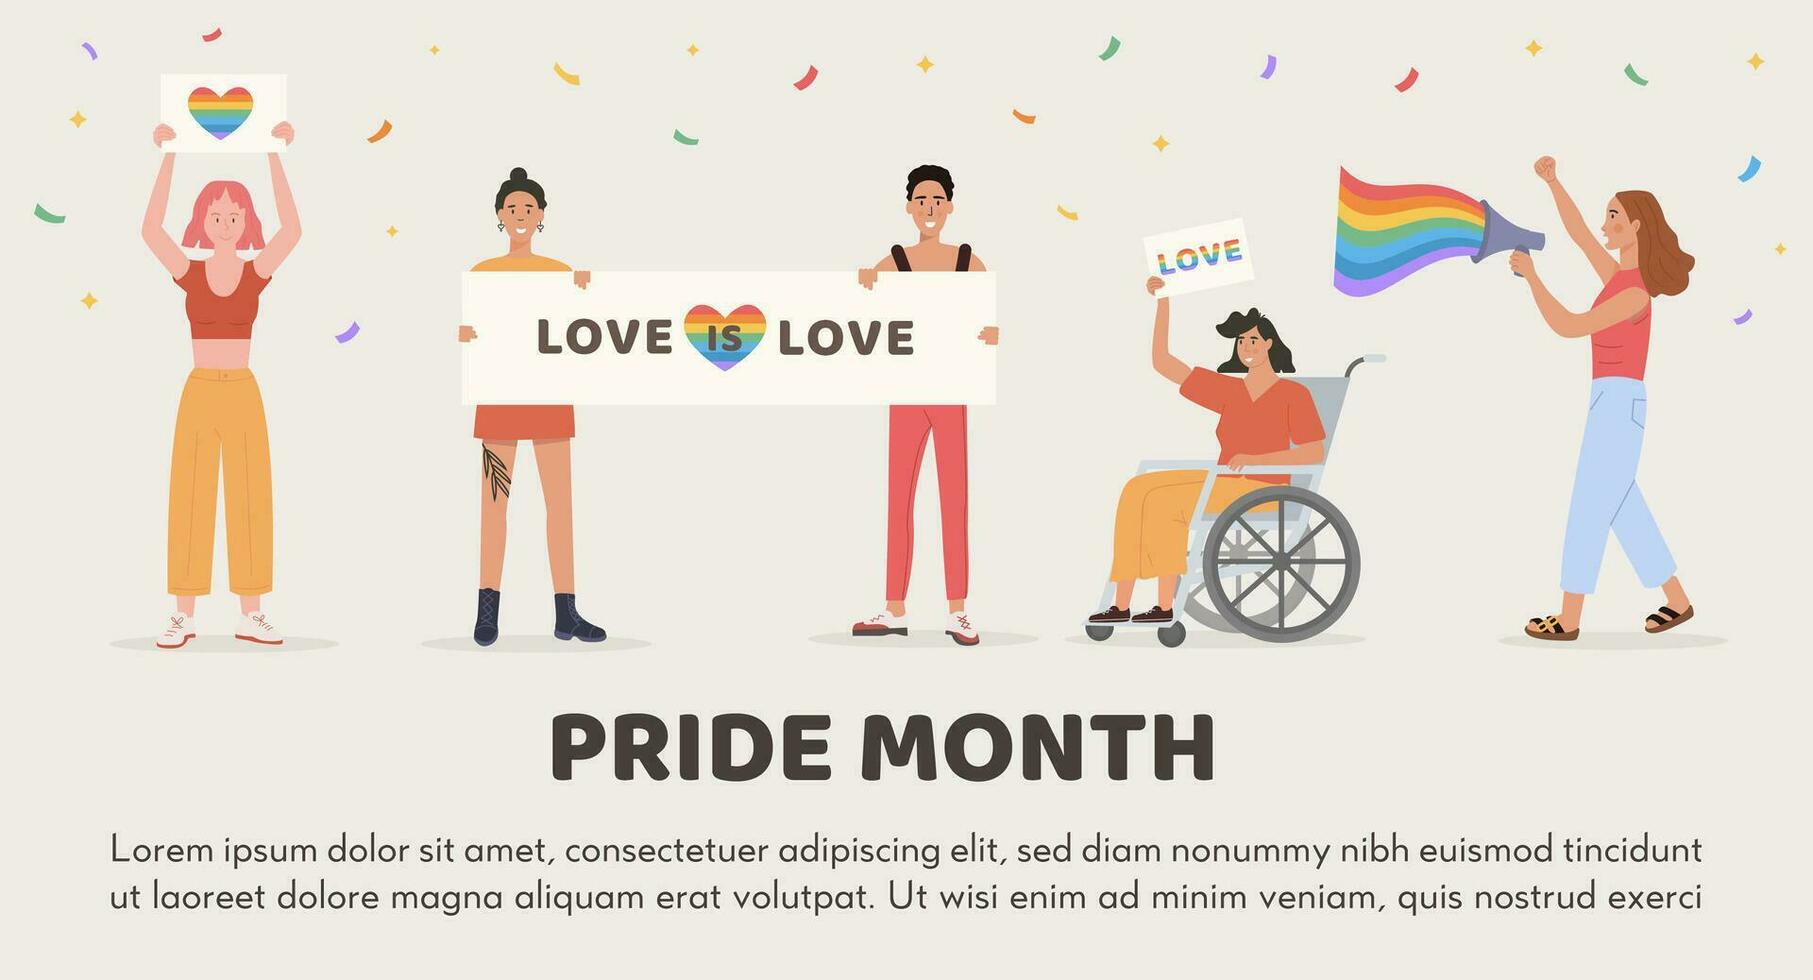 vektor baner för stolthet månad. människor innehav plakat med regnbåge hjärta och annorlunda slogan, tecken och symboler på stolthet parad firande. grupp av Gay, lesbisk, transpersoner. platt illustration.